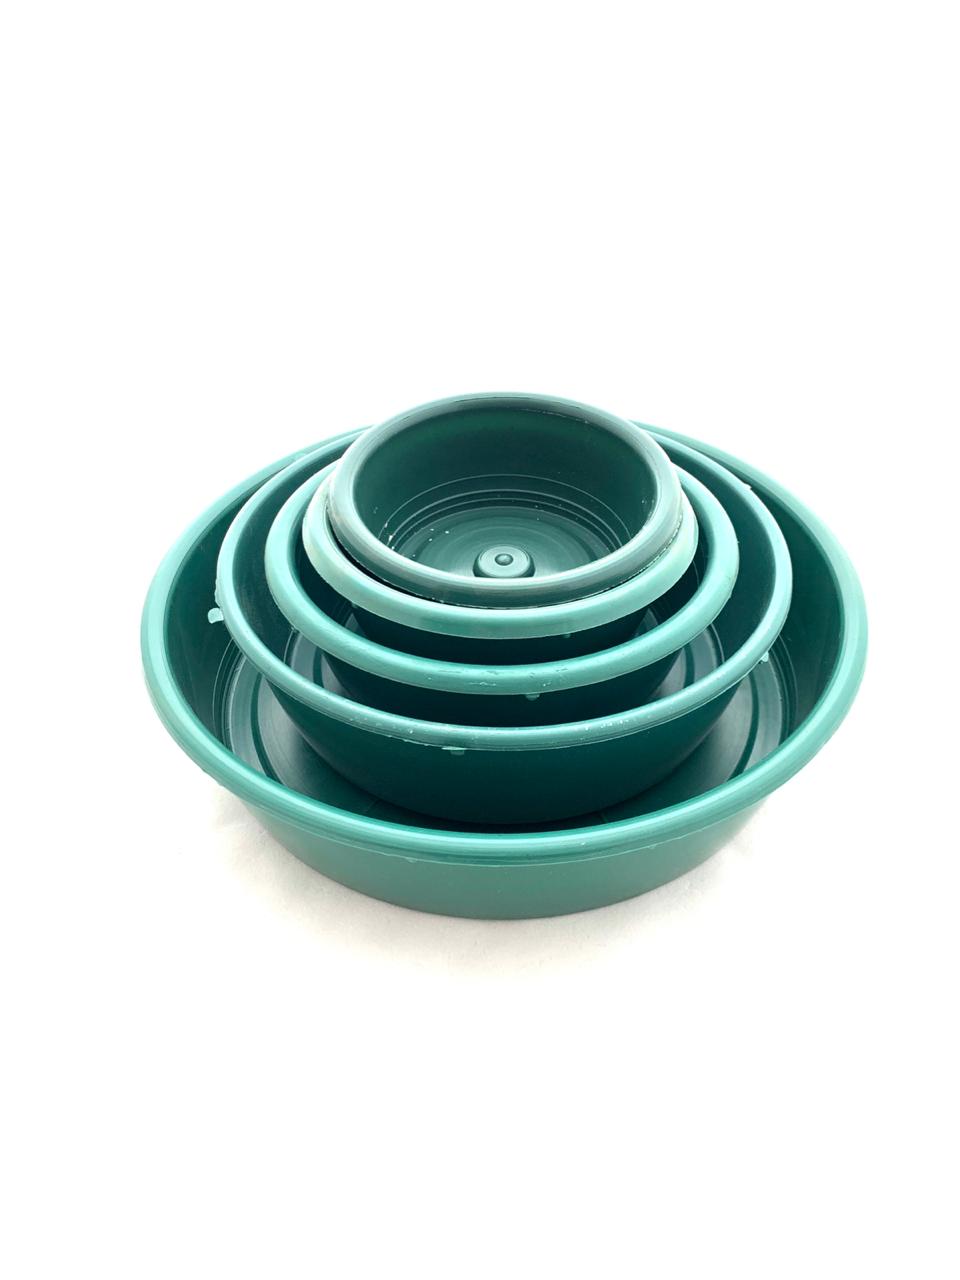 Garden Bowl Green 16cm Plastic